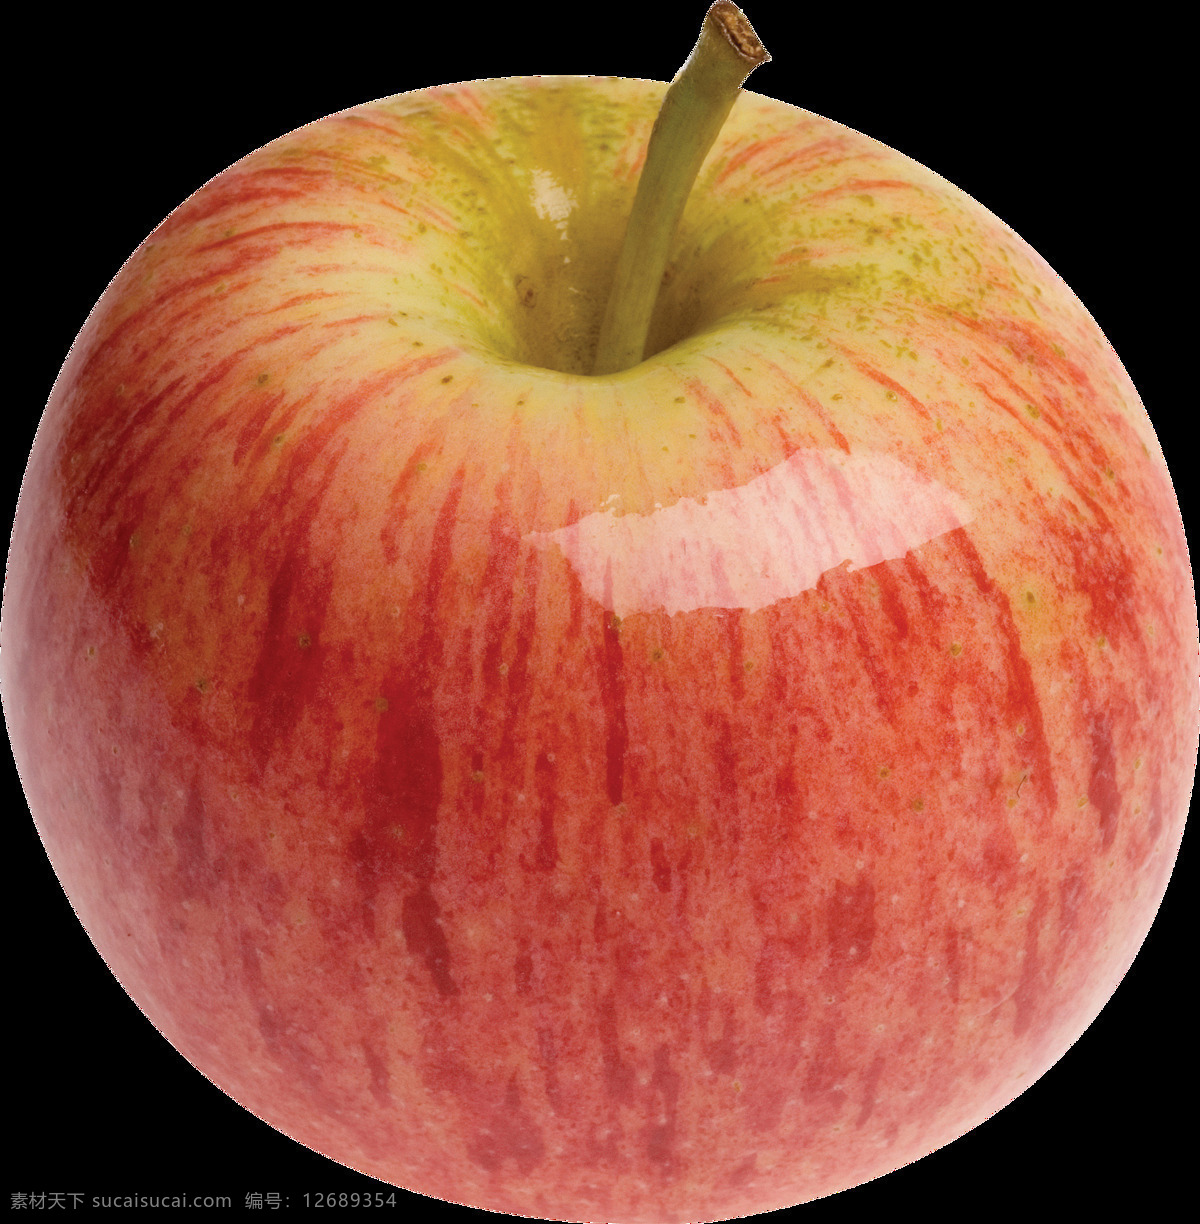 漂亮 红富士 苹果 免 抠 透明 图 层 青苹果 苹果卡通图片 苹果logo 苹果简笔画 壁纸高清 大苹果 红苹果 苹果梨树 苹果商标 金毛苹果 青苹果榨汁